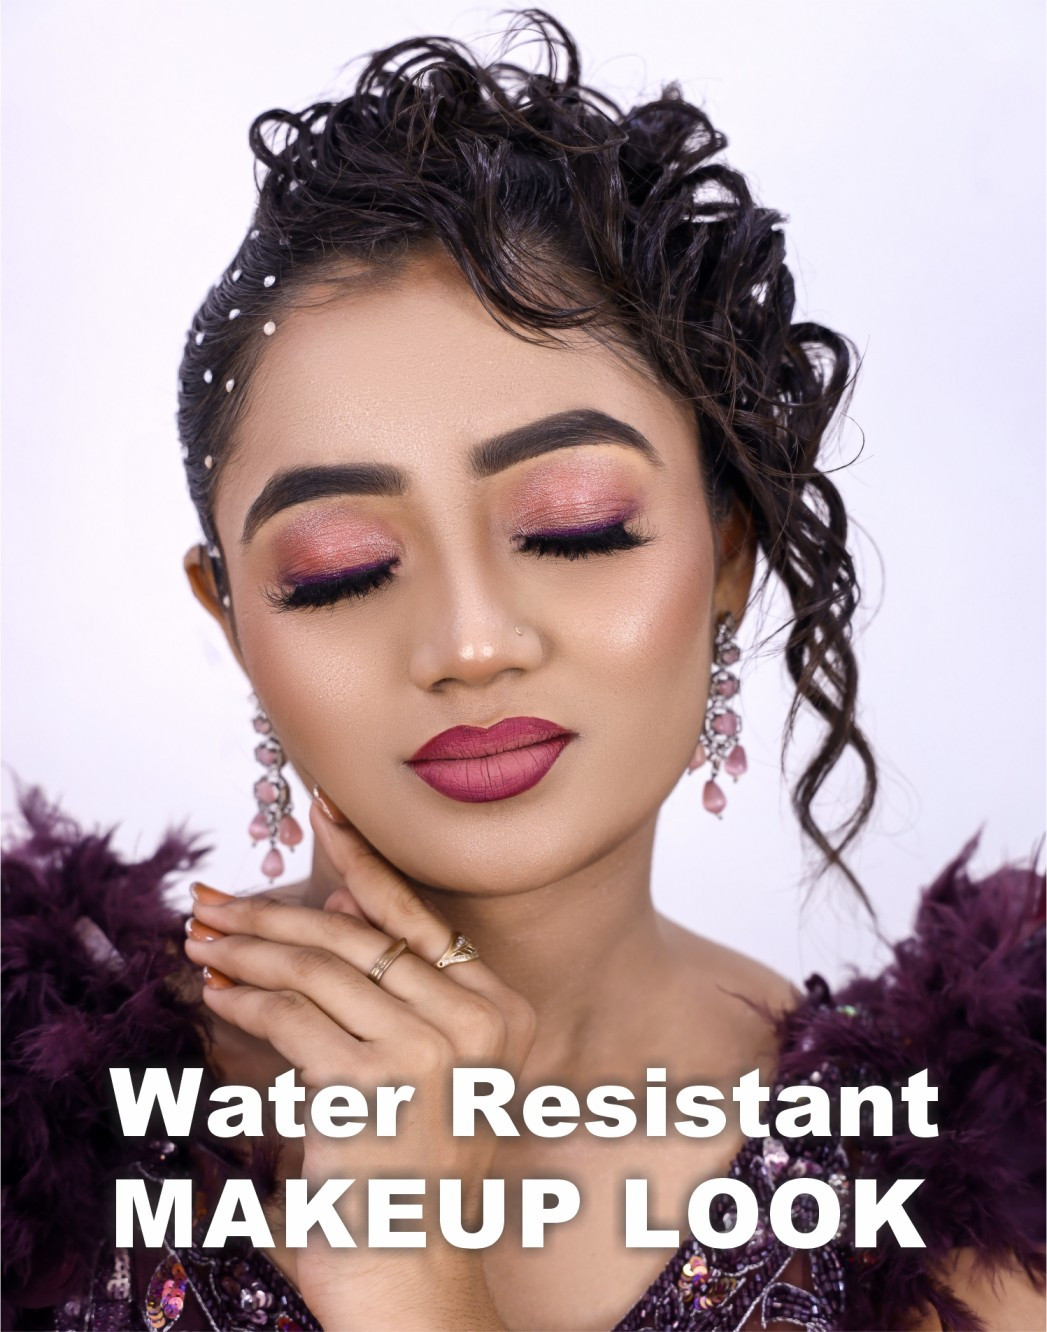 Water Resistant Makeup Look - Mkup011